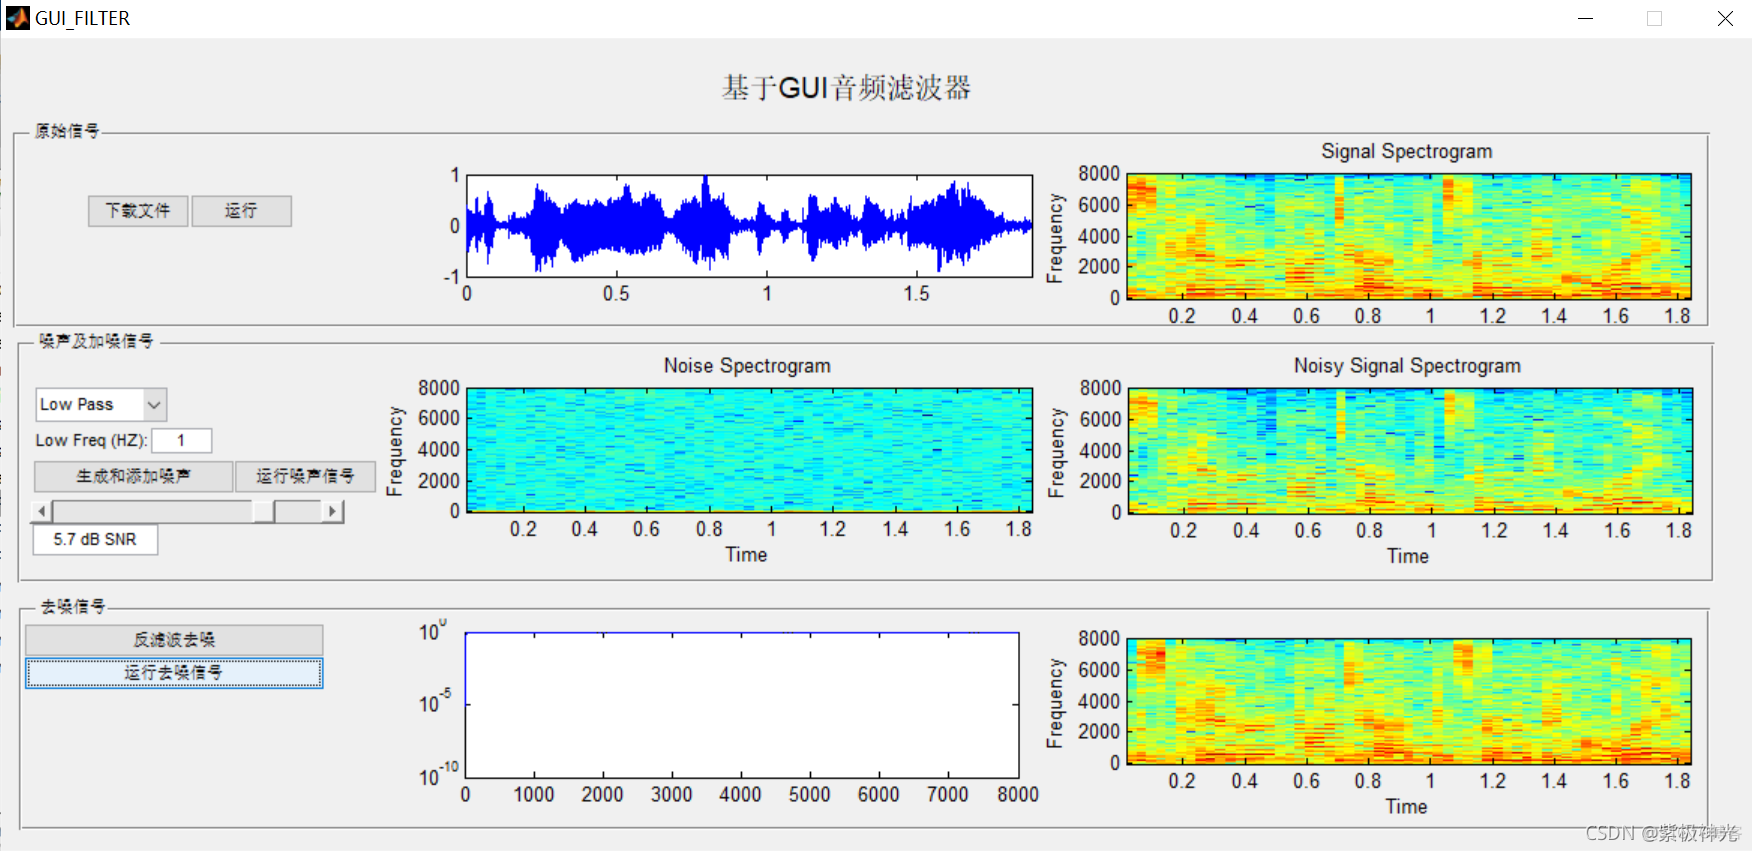 【语音去噪】基音matlab GUI音频信号去噪【含Matlab源码 1386期】_ide